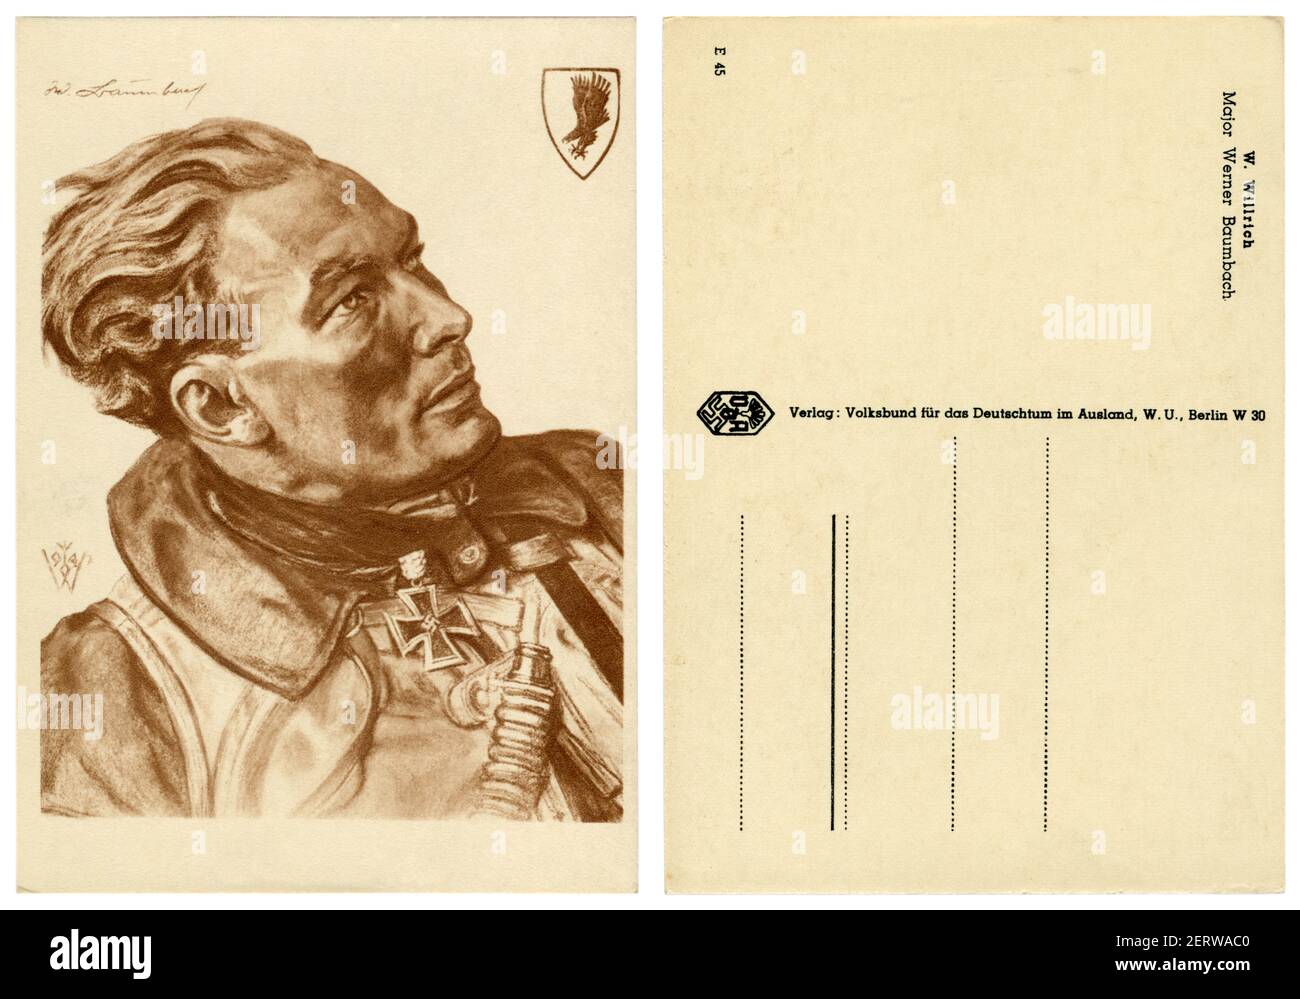 Carte postale historique allemande : portrait d'un pilote majeur Werner Baumbach avec une croix de fer avec des feuilles de chêne, artiste Wolfgang Willrich, Allemagne, années 1940 Banque D'Images